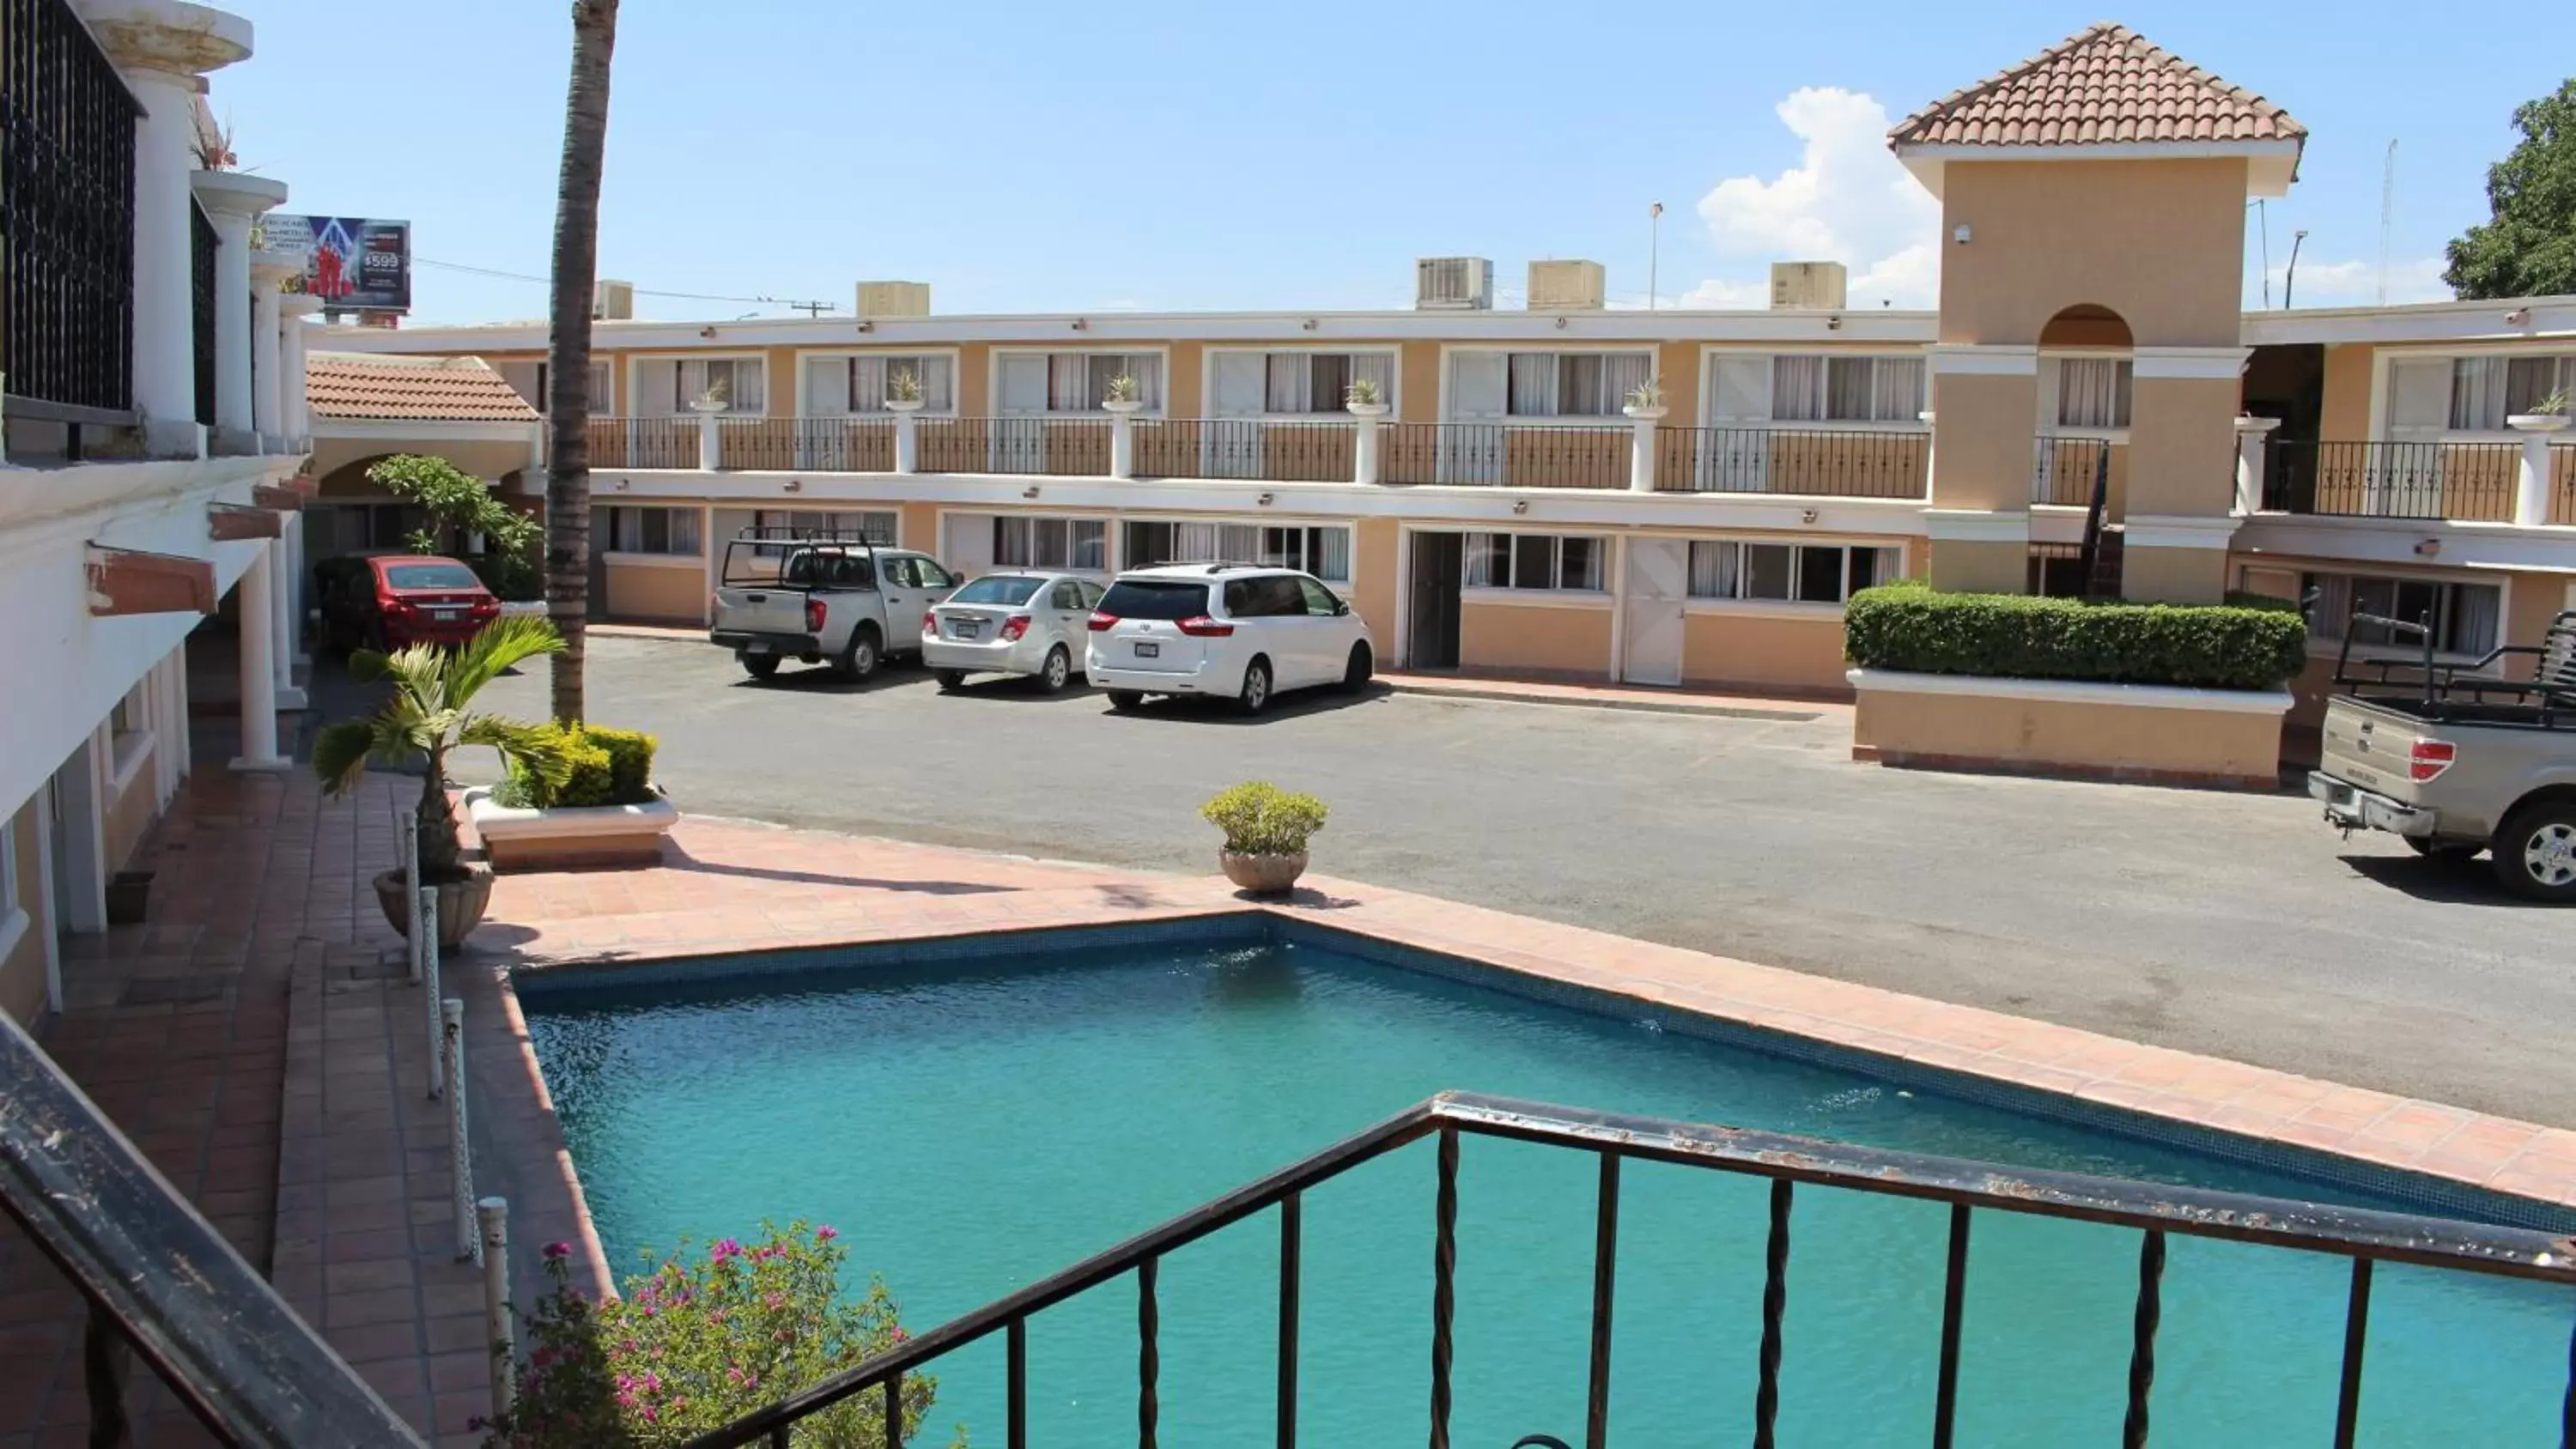 Property building, Pool View in Hotel La Villa